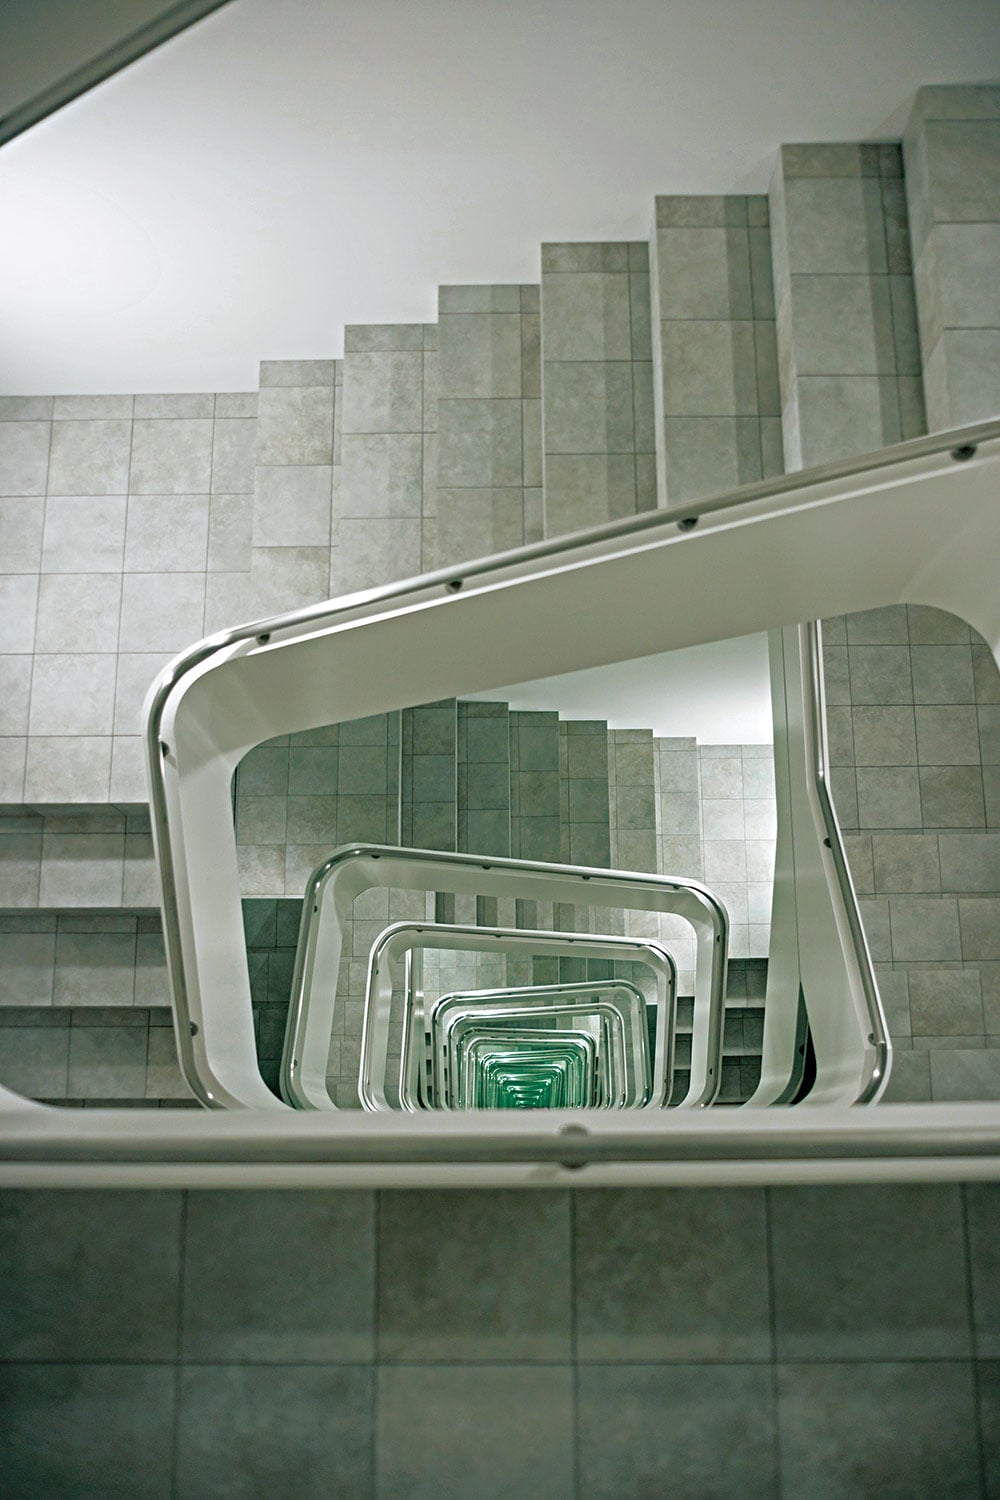 レアンドロ・エルリッヒの最新作である《IN FINITE STAIRCASE》が。“無限階段”と題されたこの作品が展示されているのは、なんと小さなミュージアムの1階。この異空間へと迷い込む感覚、ぜひご体感を。